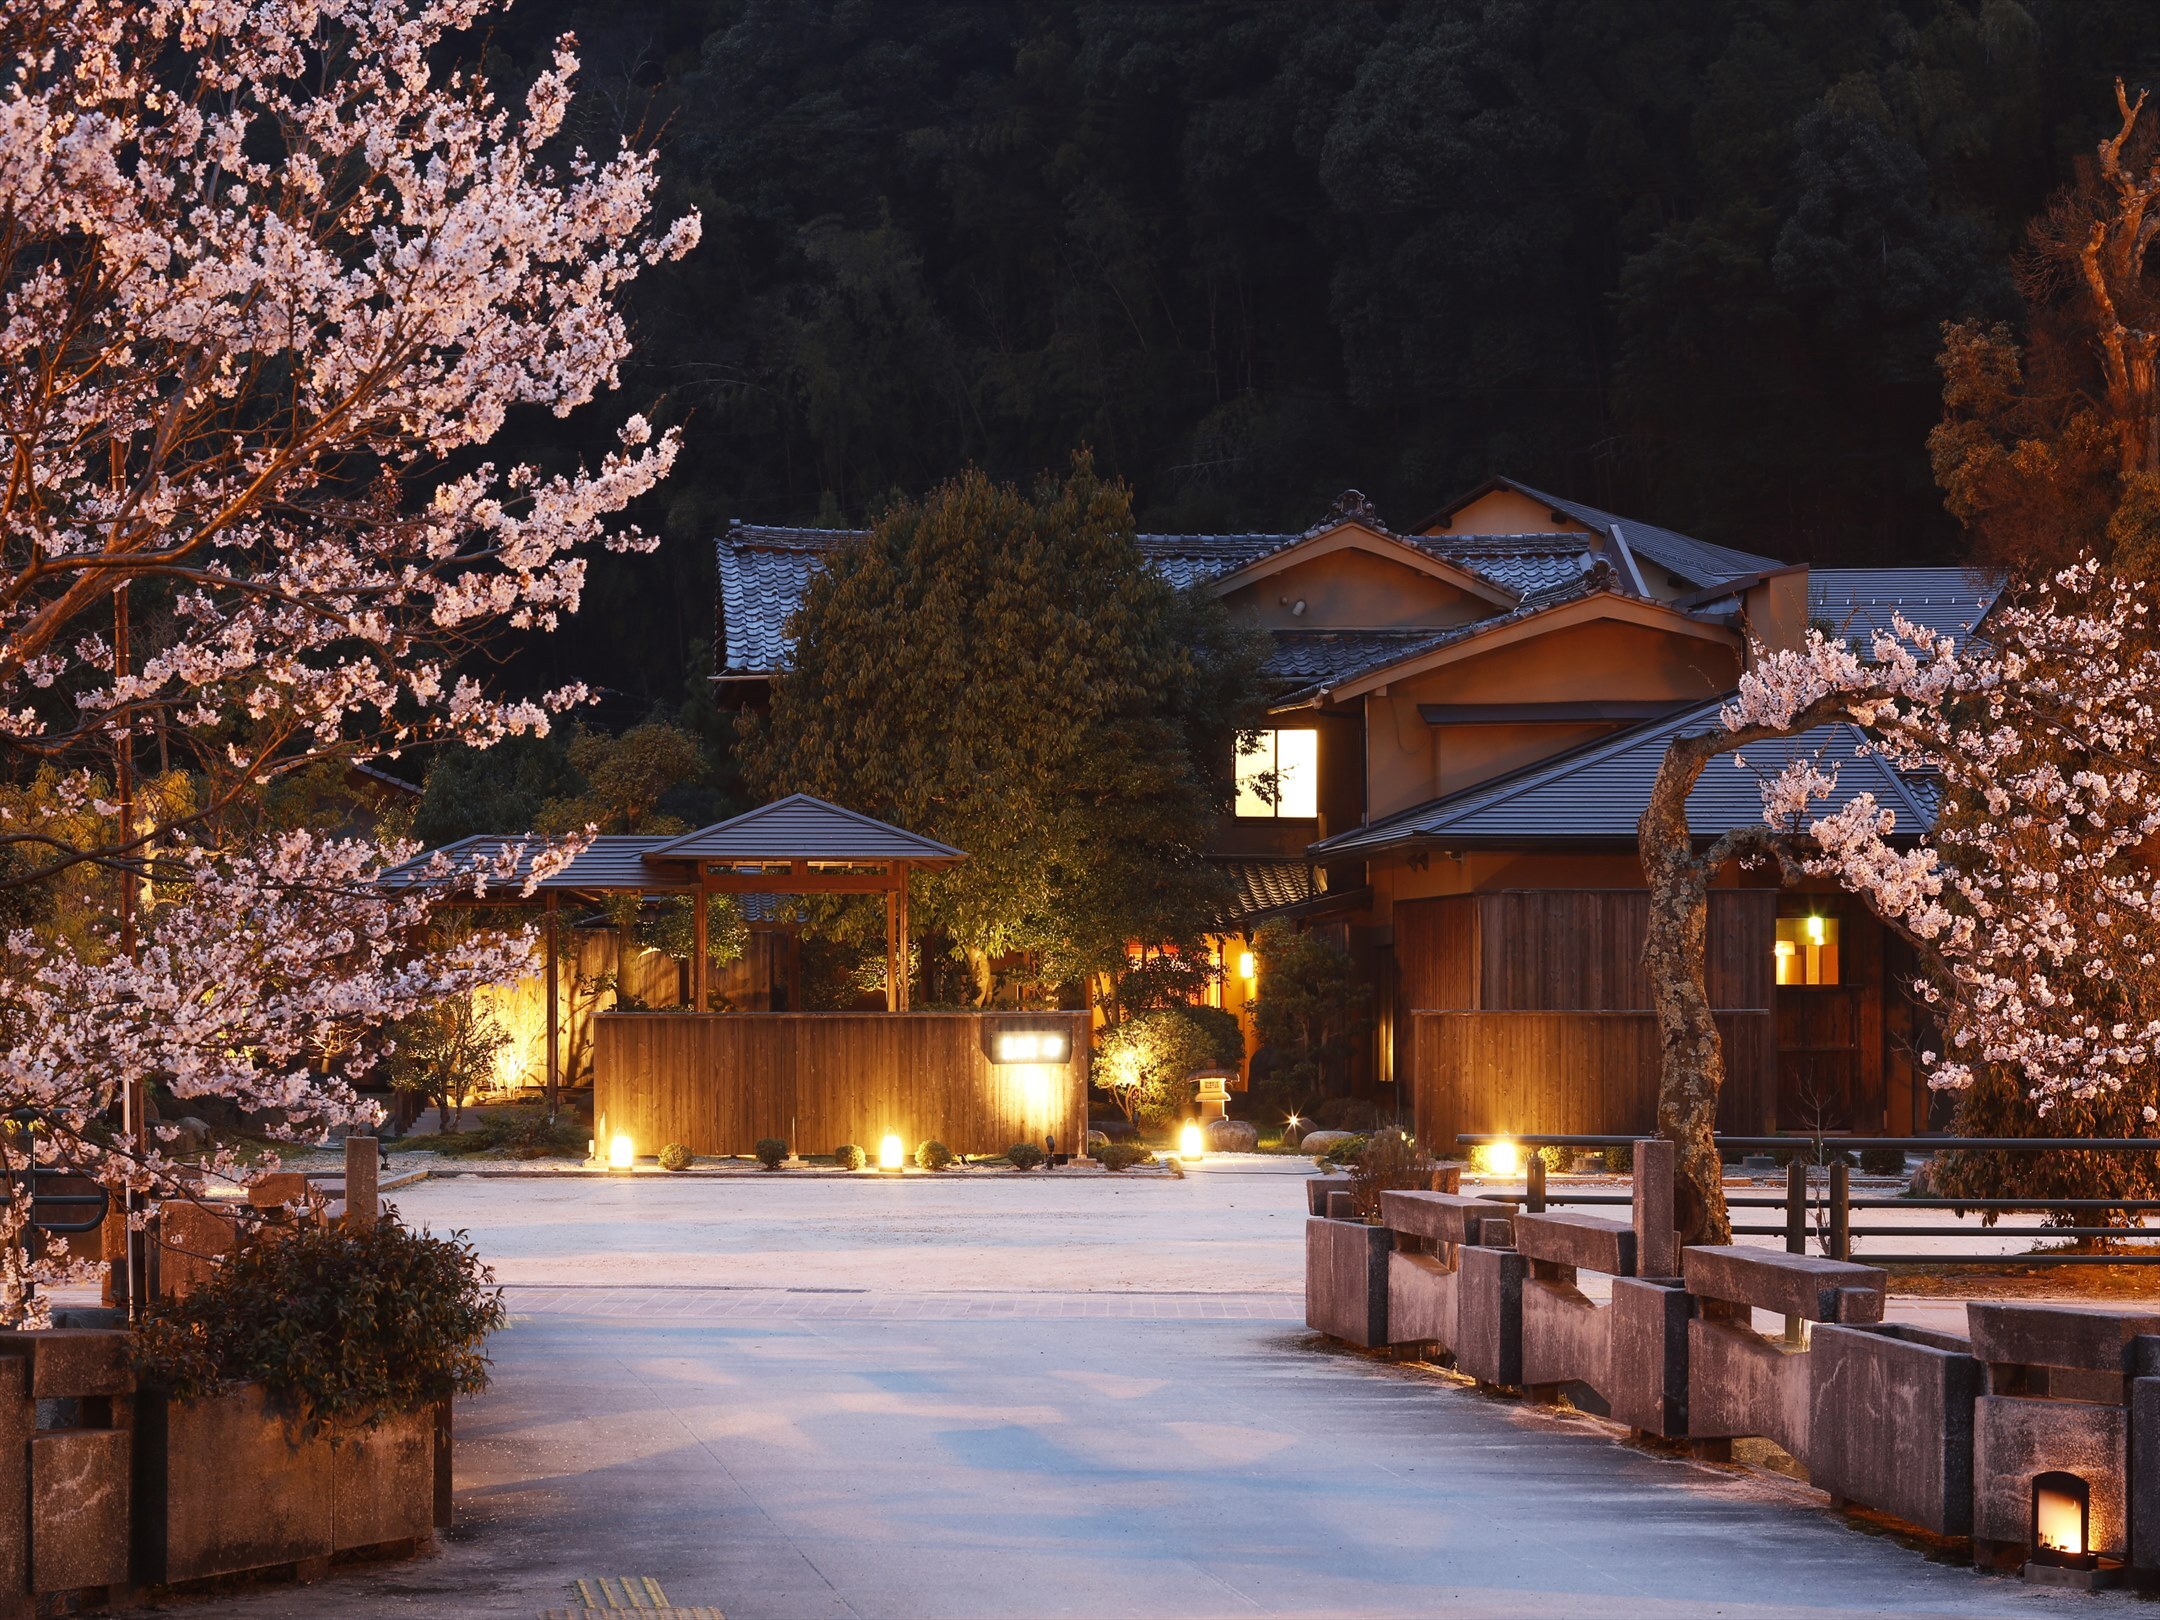 星野リゾート 界 ご当地ならではの春を感じる 桜 花旅 誕生実施期間 19年3月1日 5月31日 星野リゾートのプレスリリース